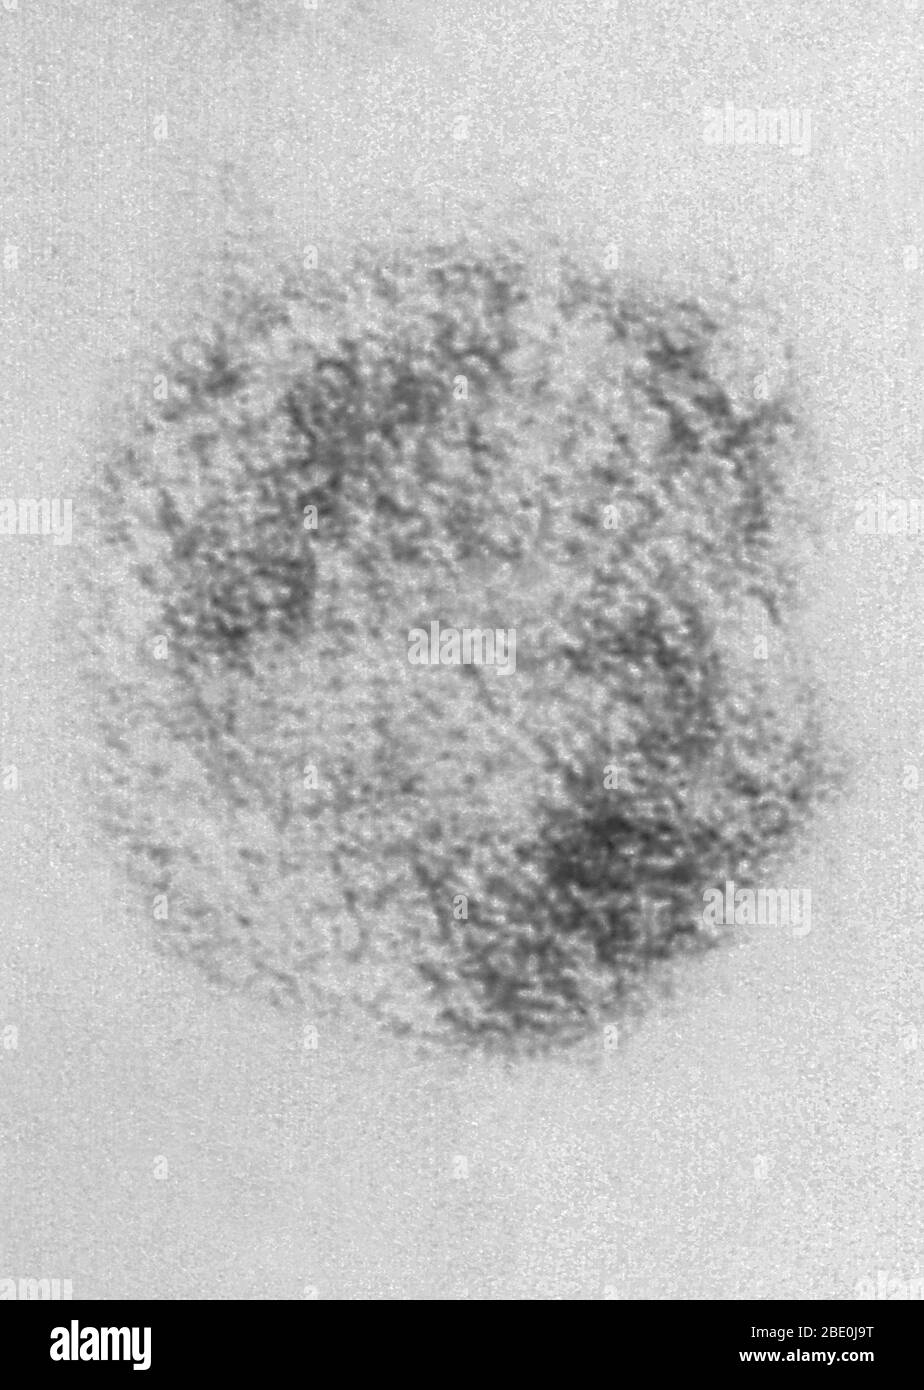 La micrografia a trasmissione a colorazione negativa (TEM) descrive virioni del virus Sin Nombre (SNV), che sono membri del genere Hantavirus, all'interno della famiglia Bunyaviridae. Il virus Sin Nombre è la causa della sindrome cardiopolmonare dell'hantavirus (HCP), anche chiamata sindrome polmonare dell'hantavirus (HPS), nell'uomo. Nel novembre 1993, l'hantavirus specifico che ha causato l'epidemia dei quattro angoli è stato isolato. Utilizzando il tessuto di un topo cervi che era stato intrappolato vicino al New Mexico casa di una persona che aveva ottenuto la malattia, la Sezione speciale patogeni a CDC è cresciuto il virus in laboratorio Foto Stock